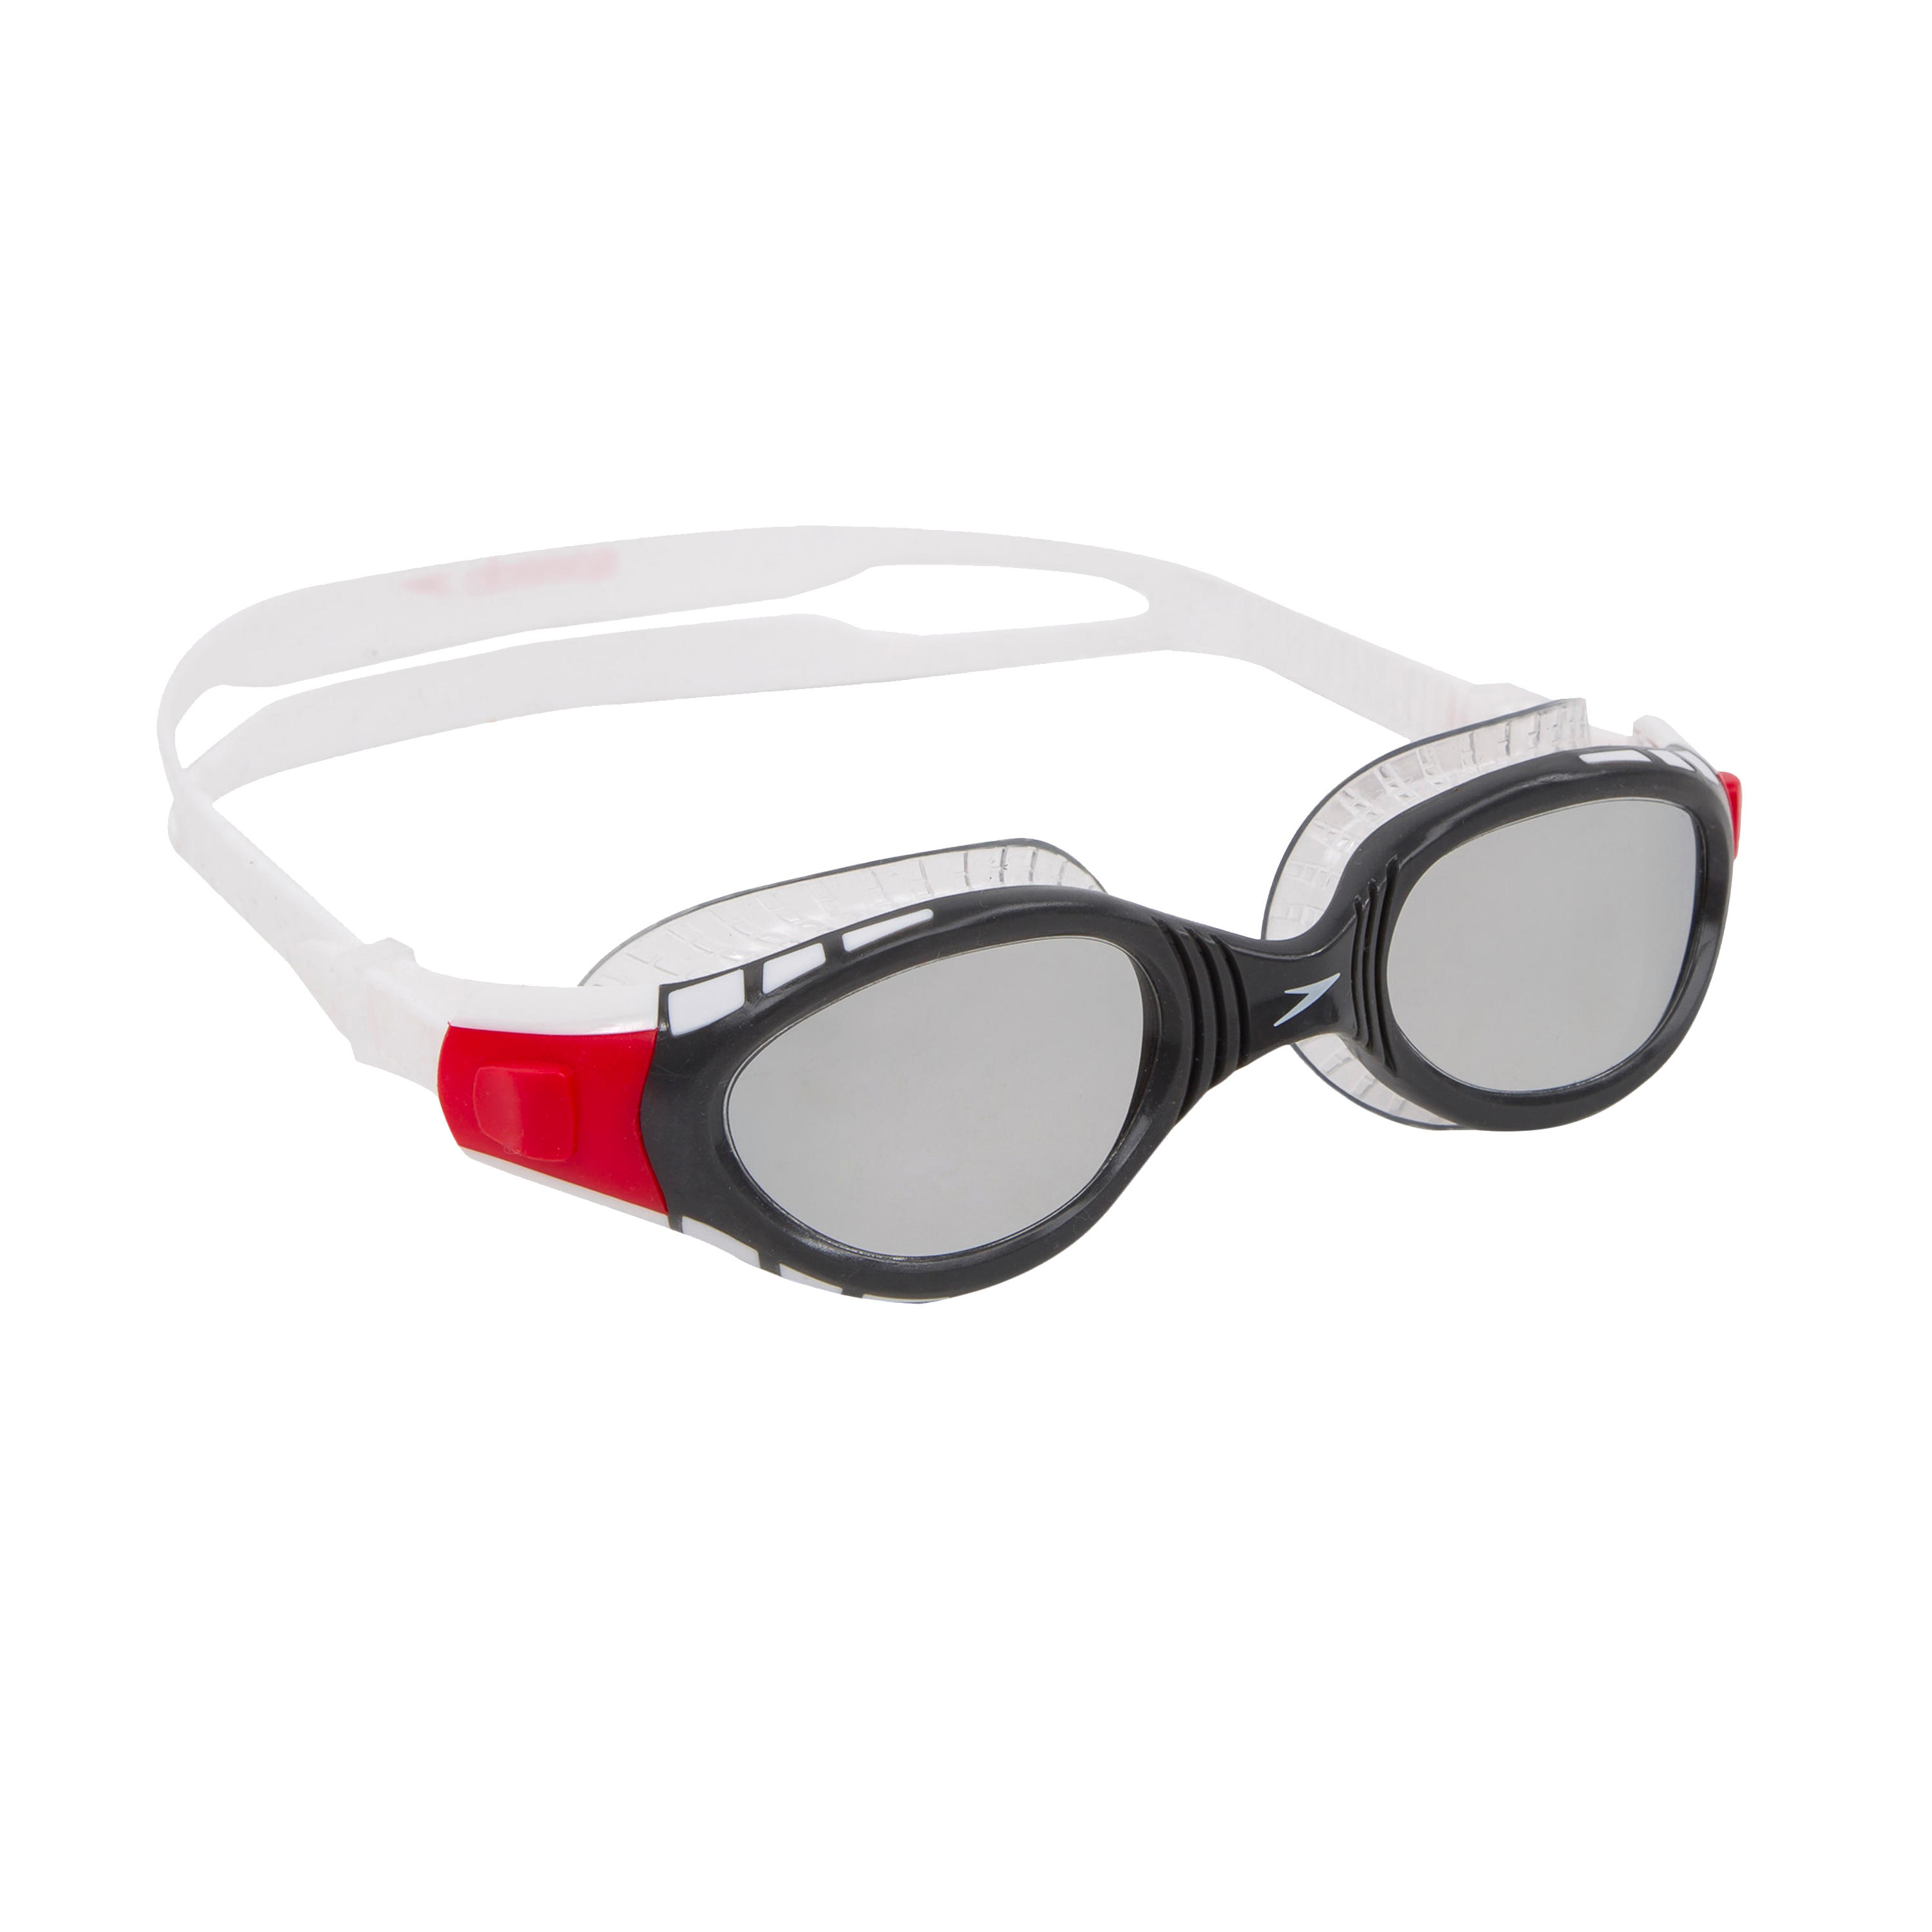 Gafas de natación Speedo máscara de Futura clásica junior niños niñas niños 